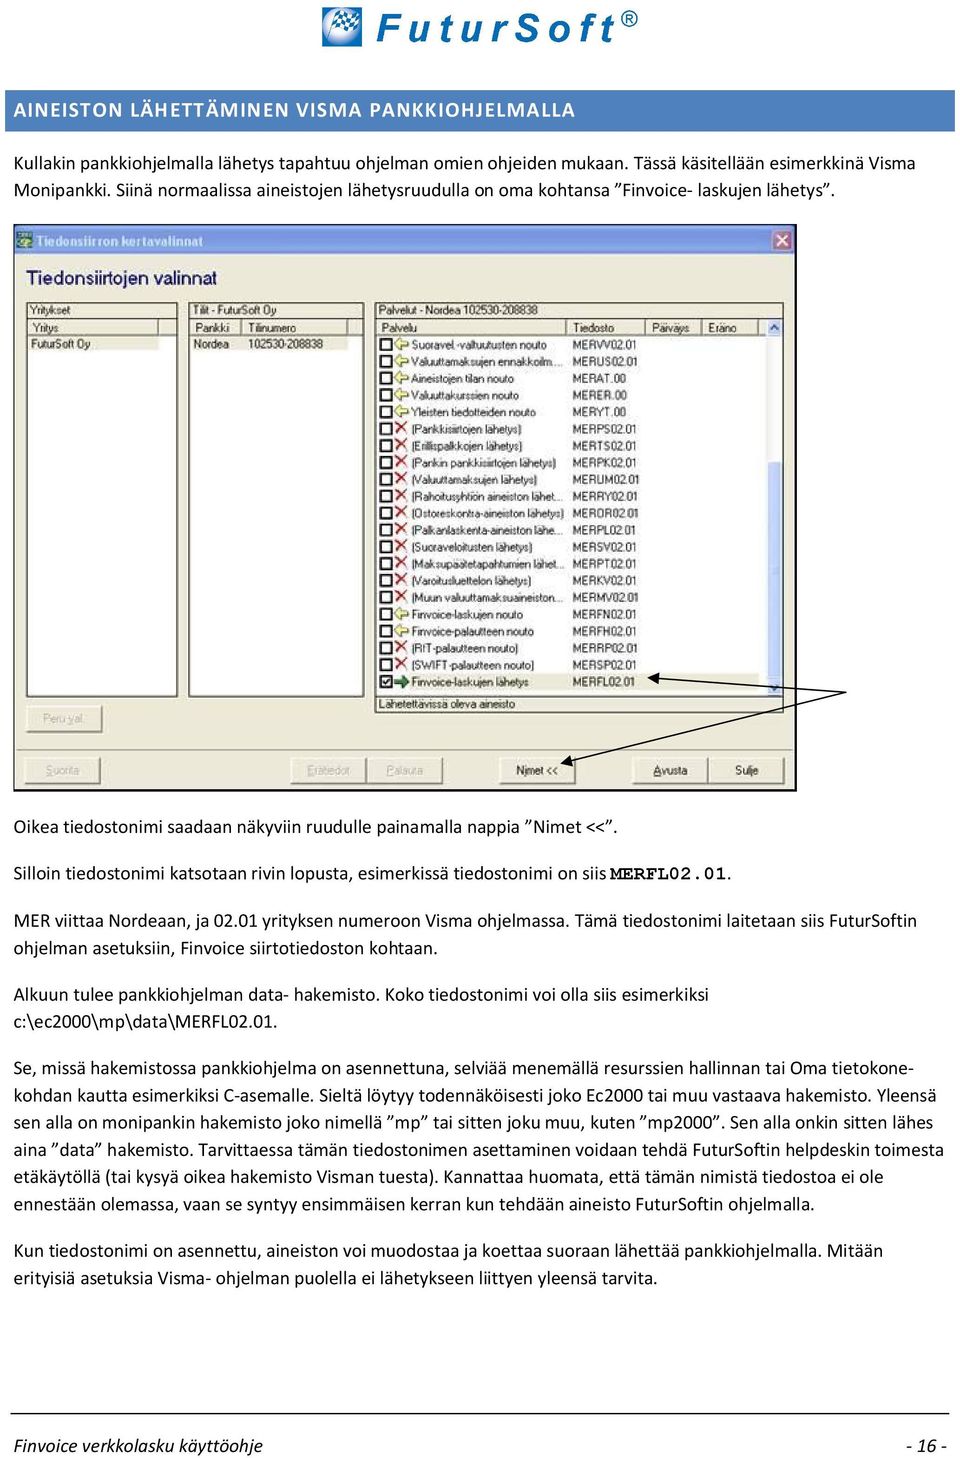 Silloin tiedostonimi katsotaan rivin lopusta, esimerkissä tiedostonimi on siismerfl02.01. MER viittaa Nordeaan, ja 02.01 yrityksen numeroon Visma ohjelmassa.